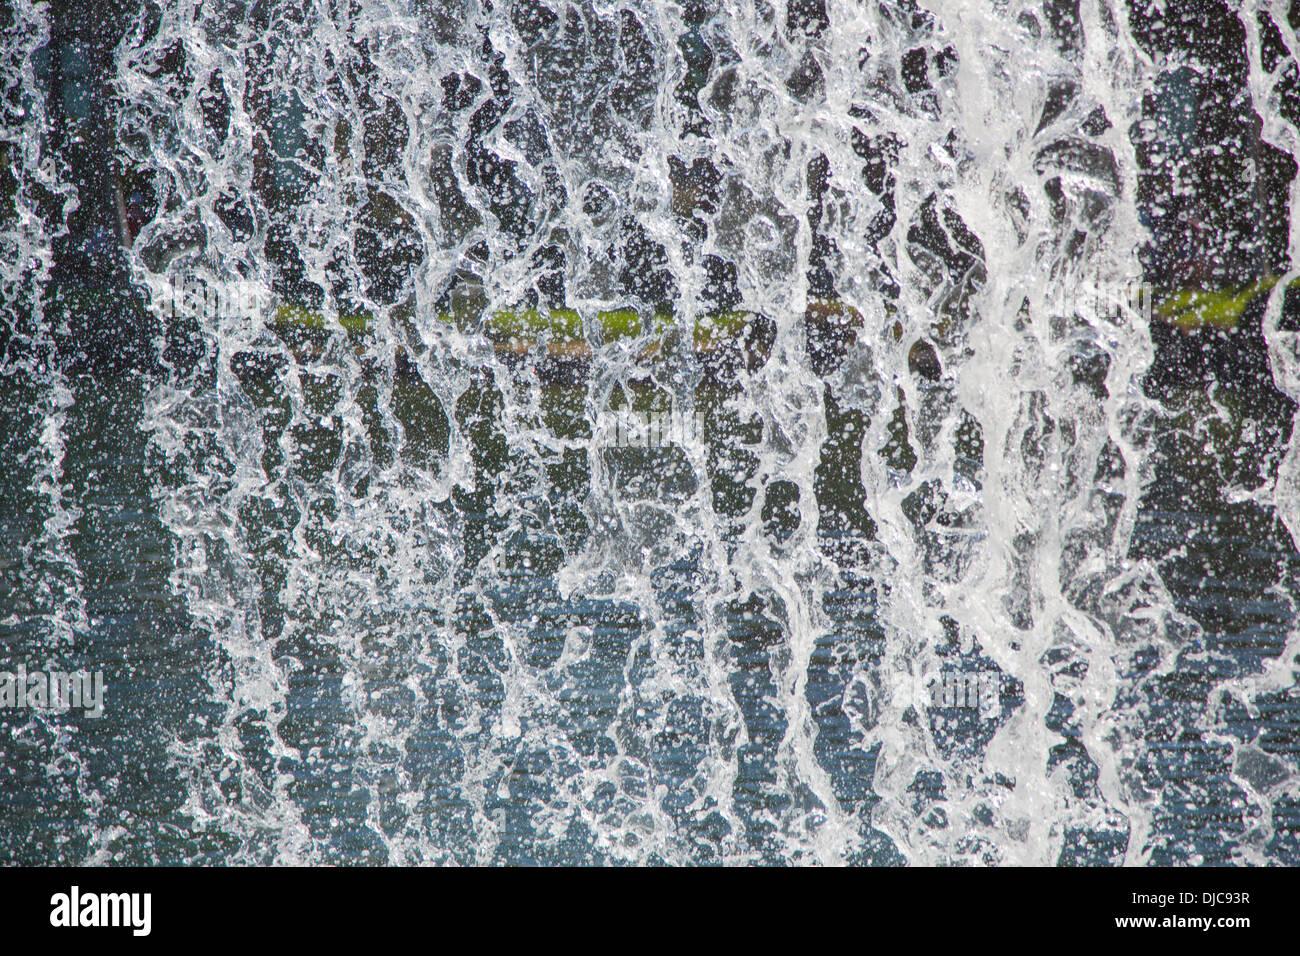 Waterfall, Big Island of Hawaii Stock Photo